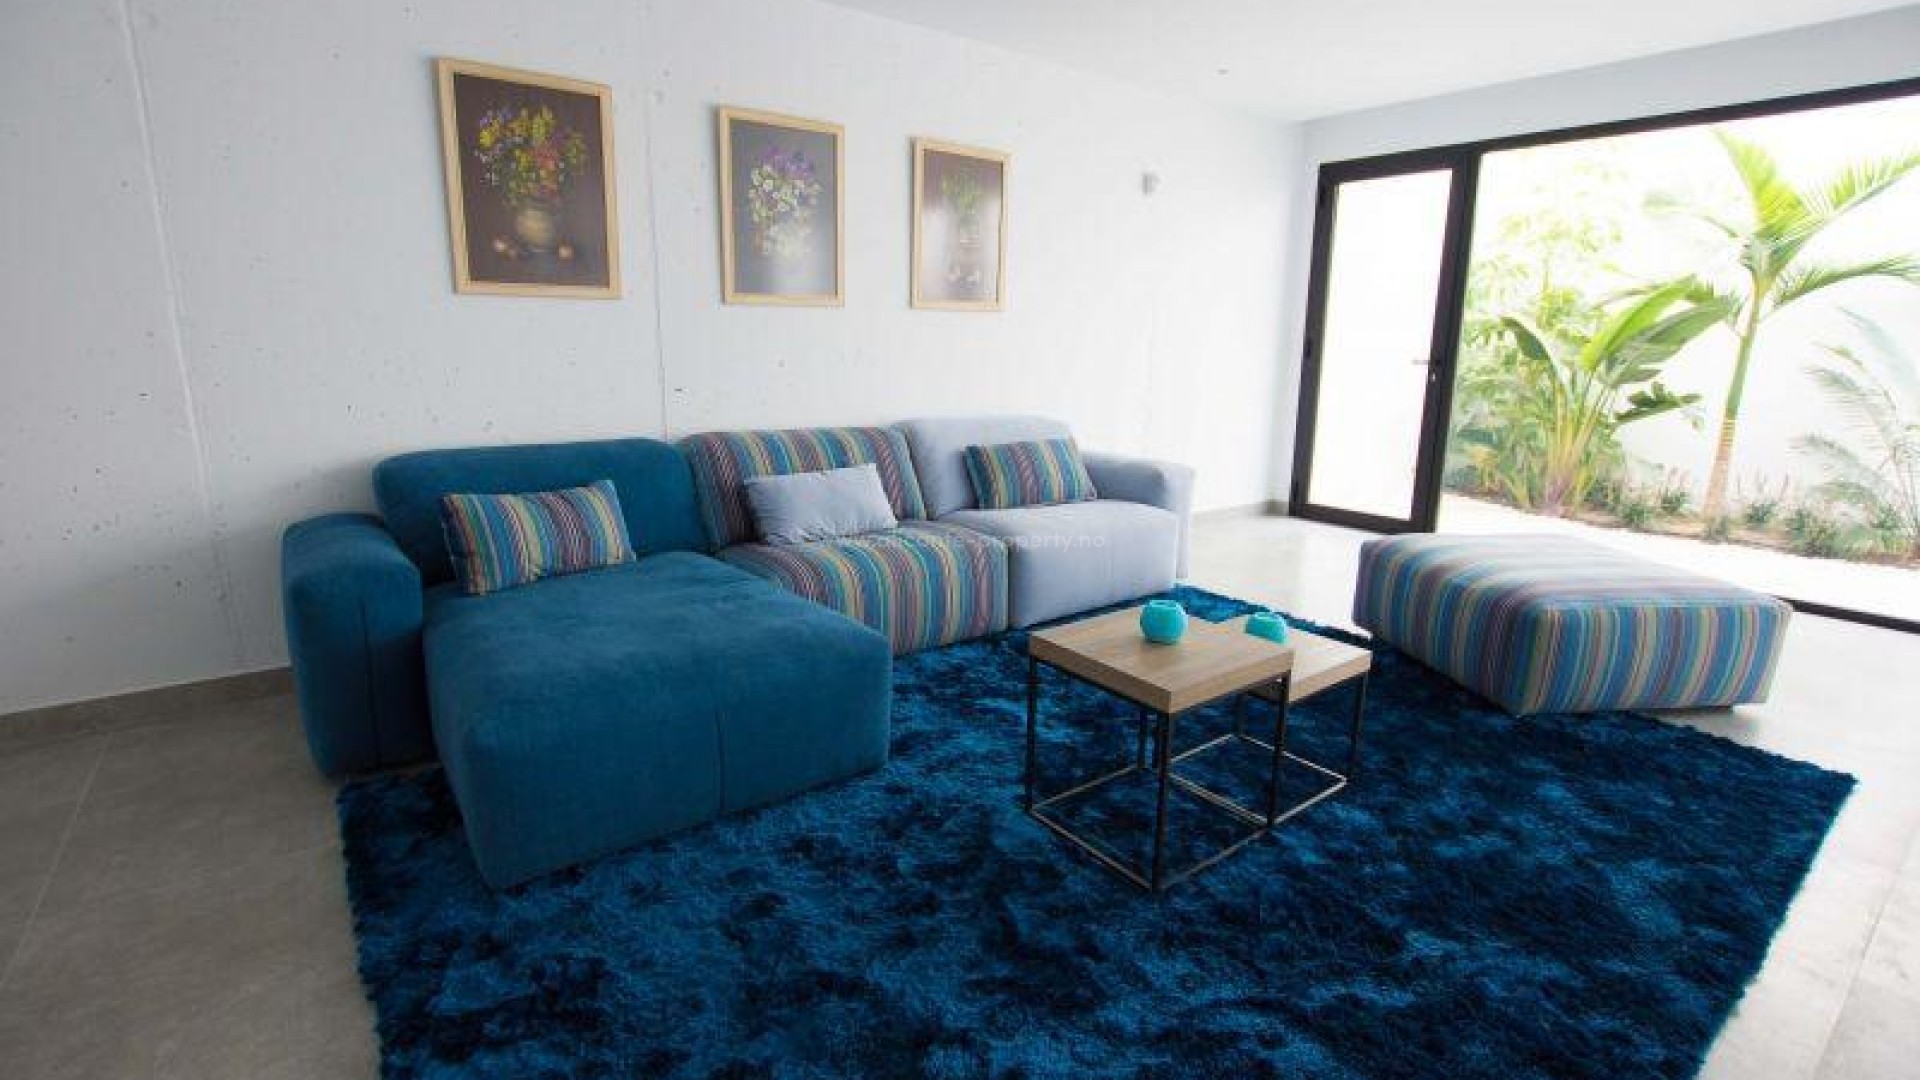 Luksuriøse hus/villa på et plan i Sierra Cortina, Alicante, 3 soverom, 2 bad, hage med basseng, solarium med fin utsikt